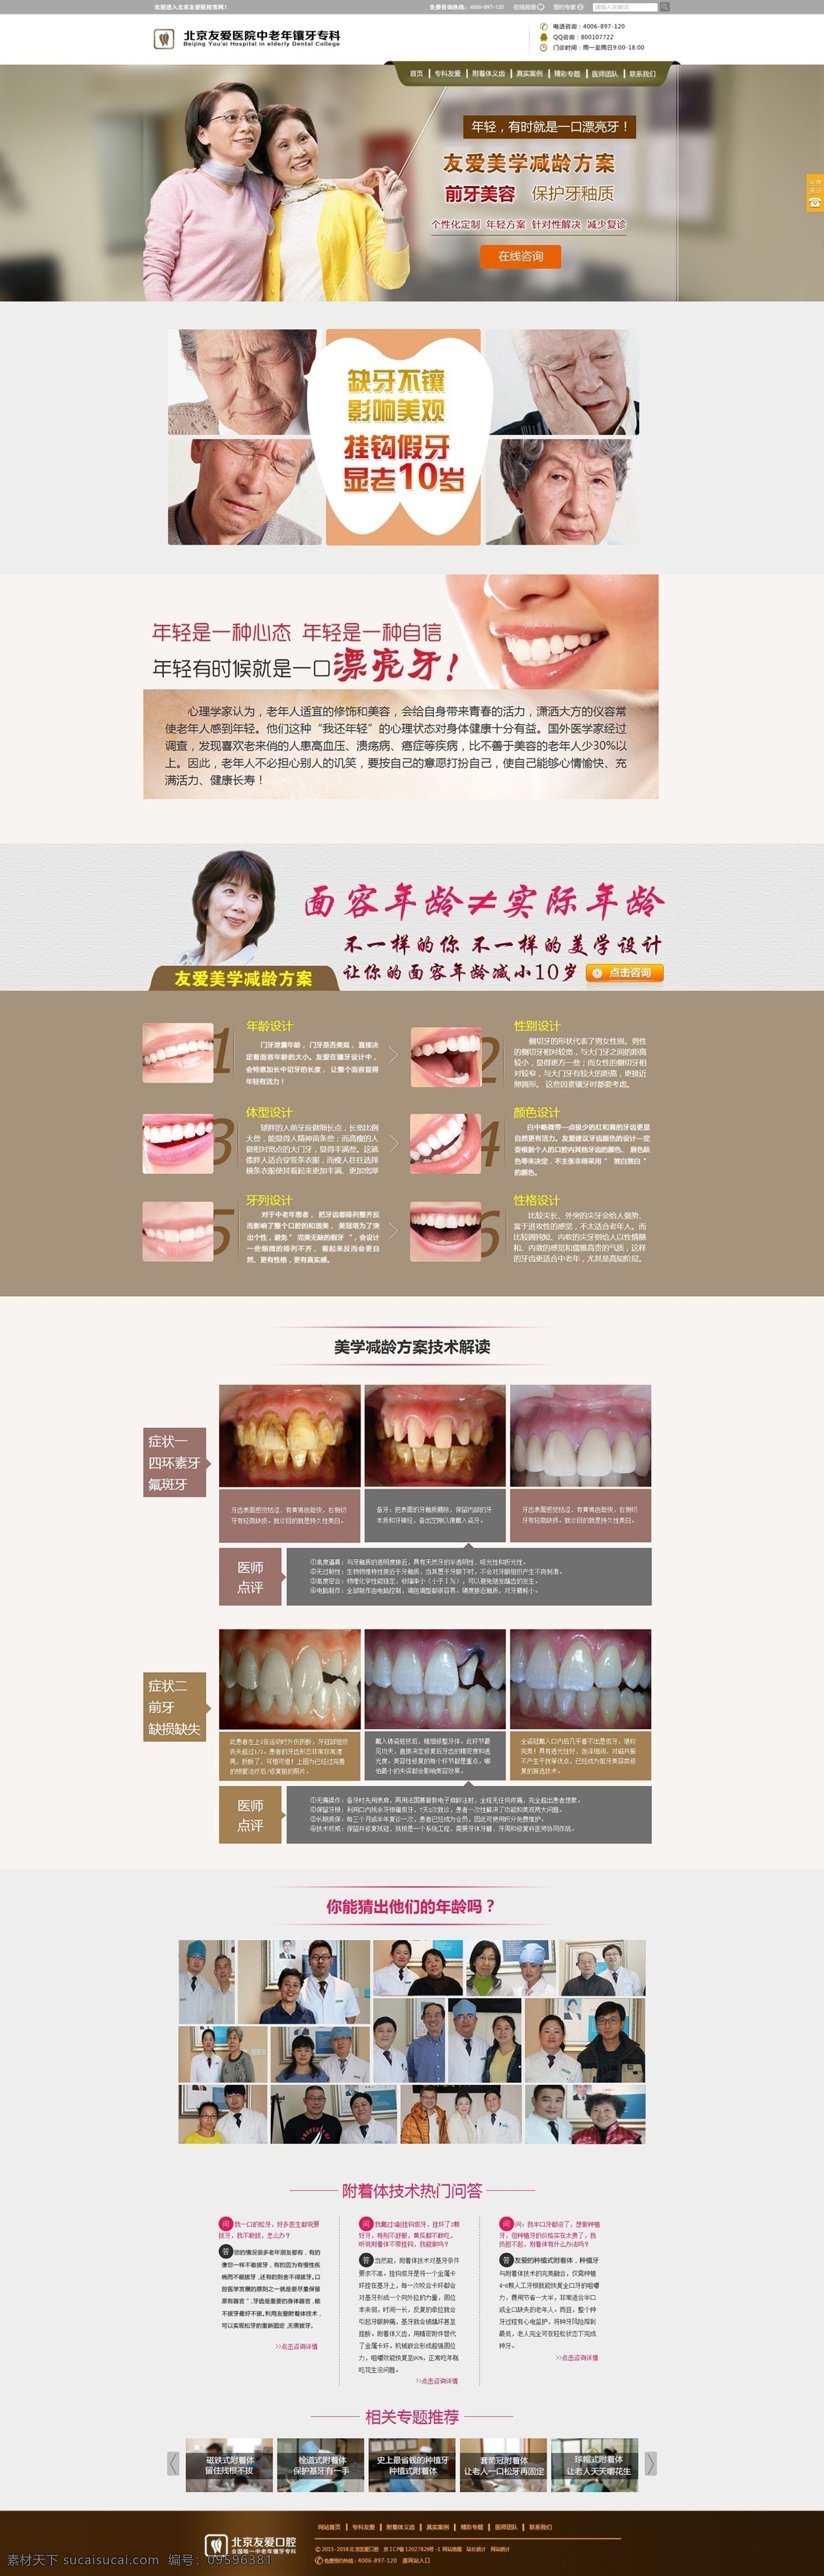 牙齿美容网站 牙齿缺失 牙齿 缺失 危害 牙齿美容 技术 问答 牙齿美容案例 专题推荐